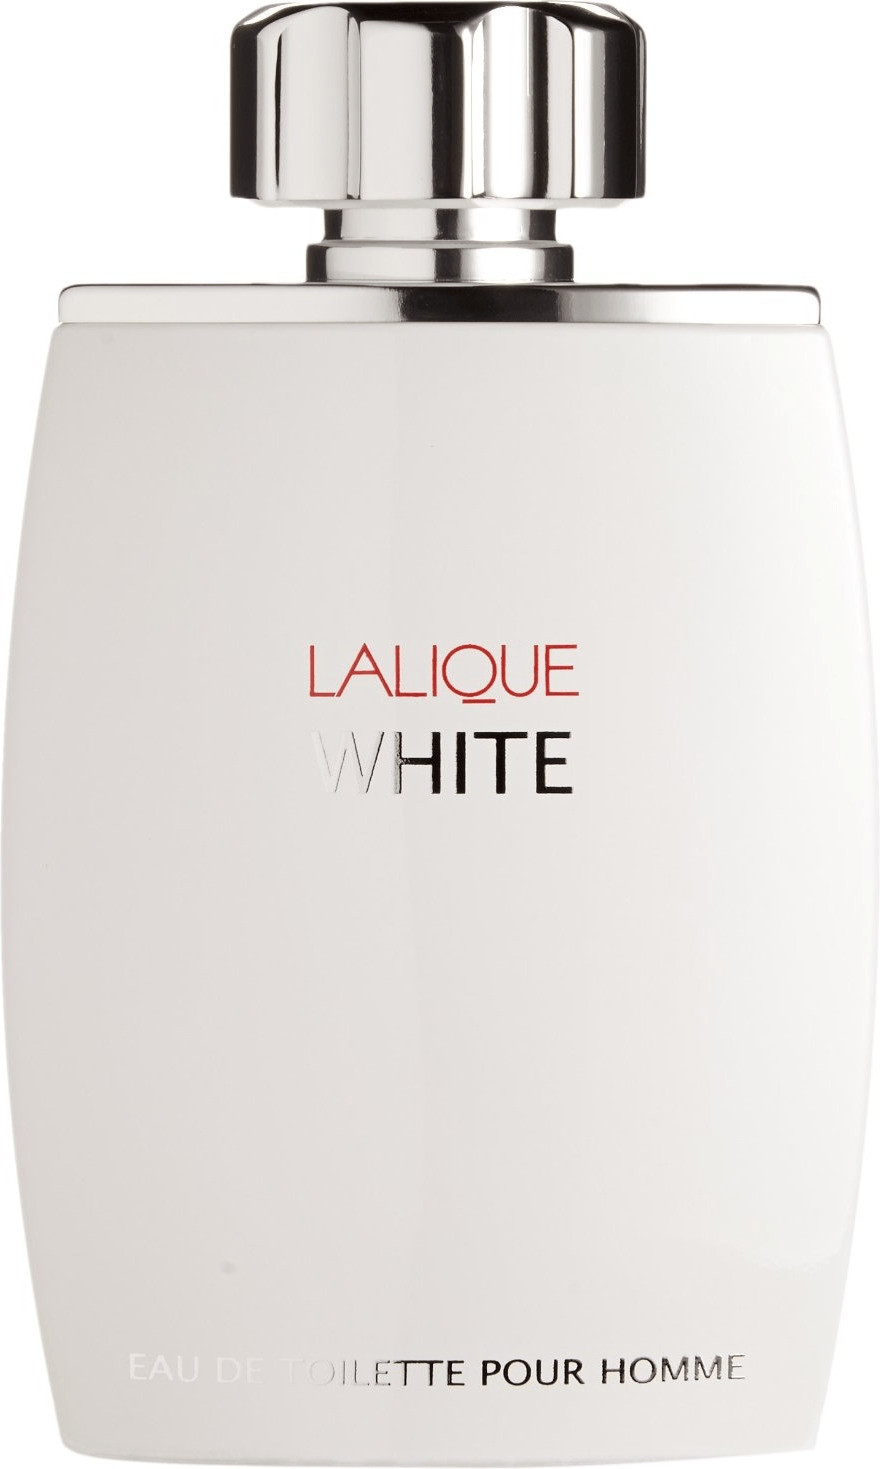 Photos - Men's Fragrance Lalique White Pour Homme Eau de Toilette  (125ml)